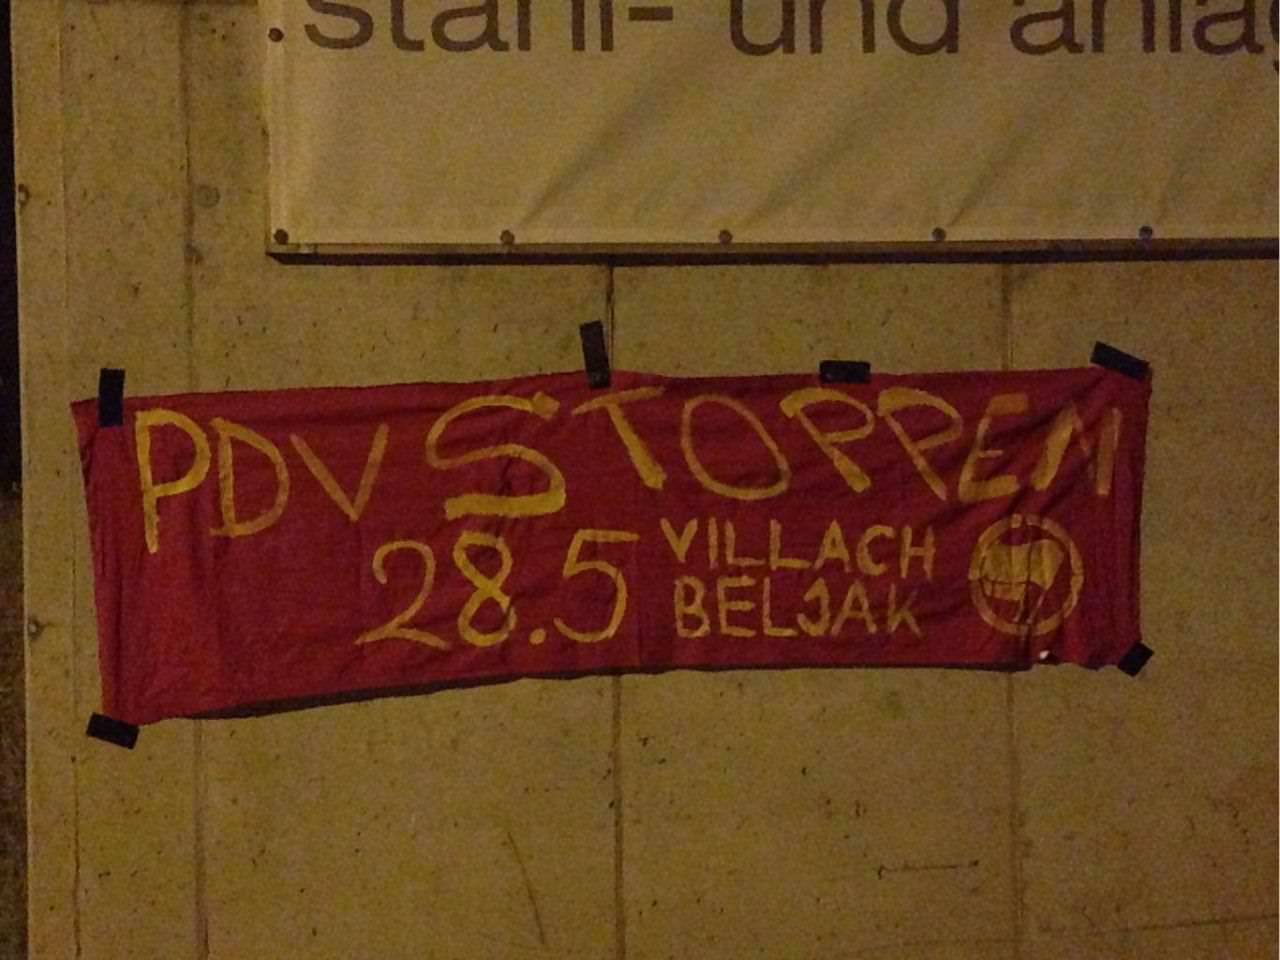 Über Nacht wurden Banner angebracht um so der Partei des Volkes entgegenzutreten.